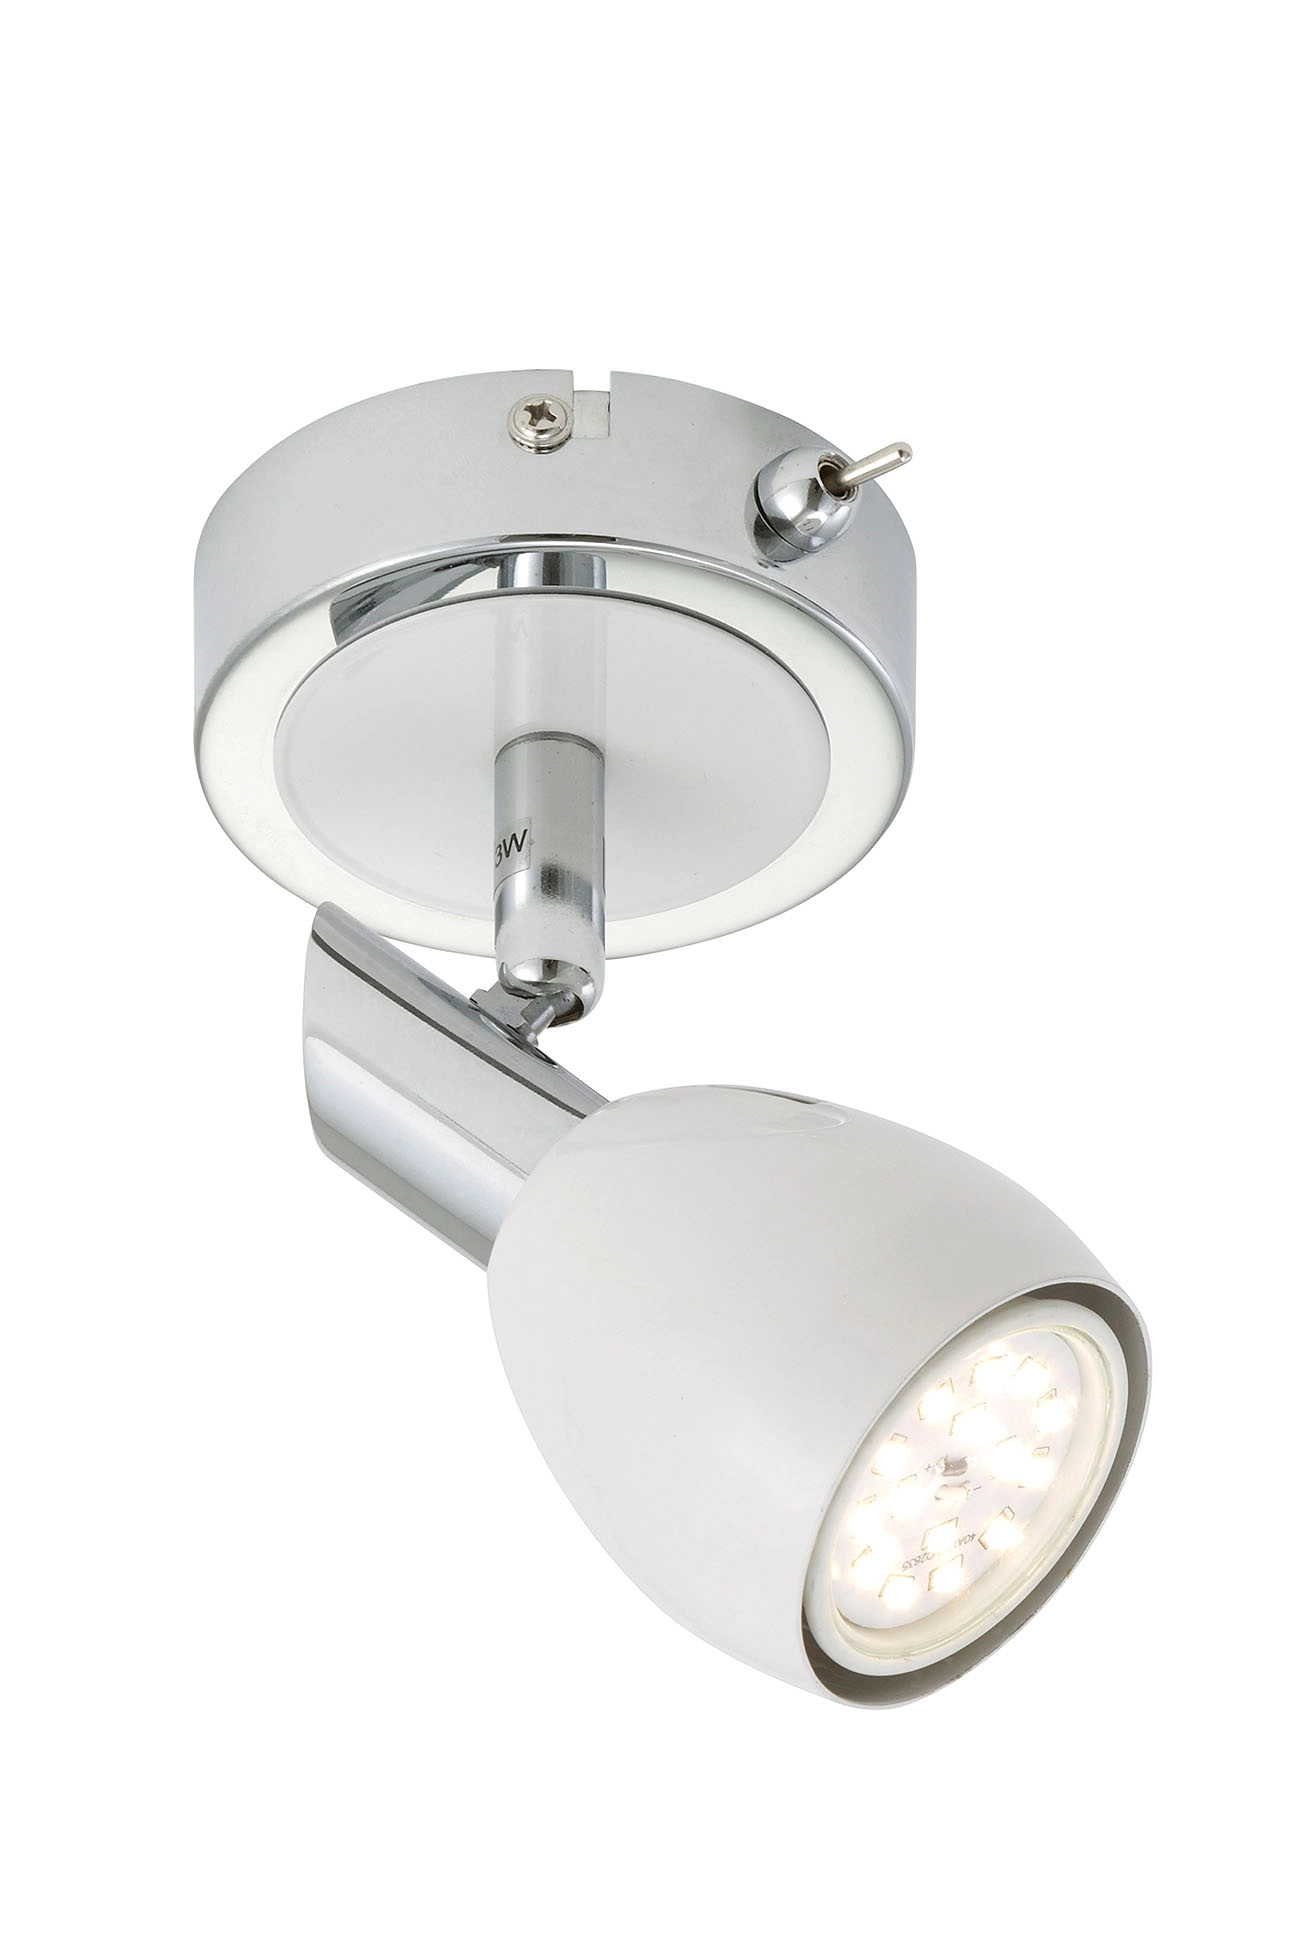 LED Spot Wandleuchte, Ø 8,5 cm, 5 W, Chrom-Weiß